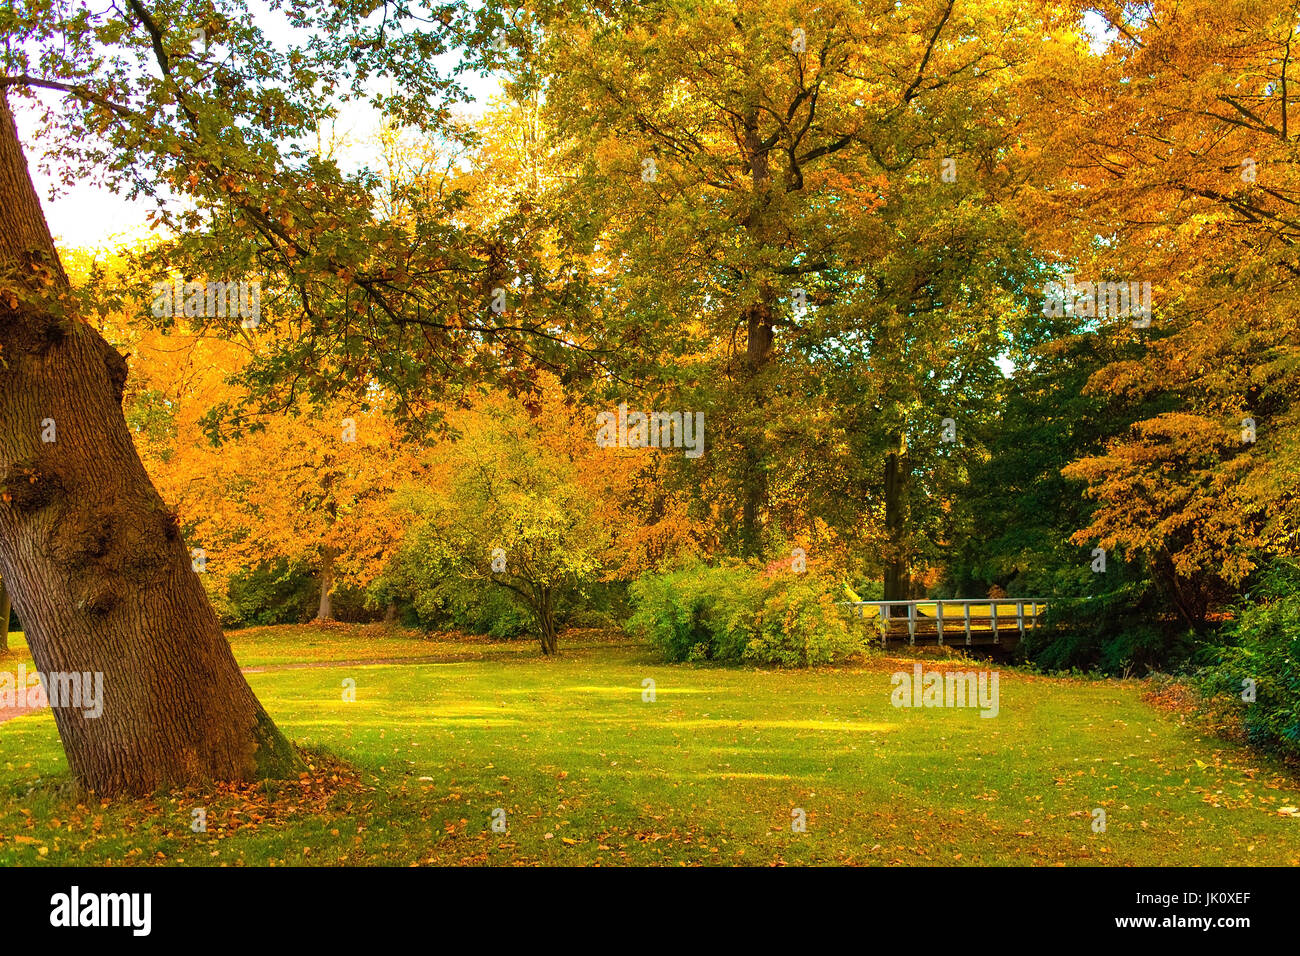 mehr herbstliche Park mit farbigen diejenigen oben hinten und kleine Holzbrücke, Herbstlicher Park Mit Bunton Baeumen Und Kleiner holzbruecke Stockfoto